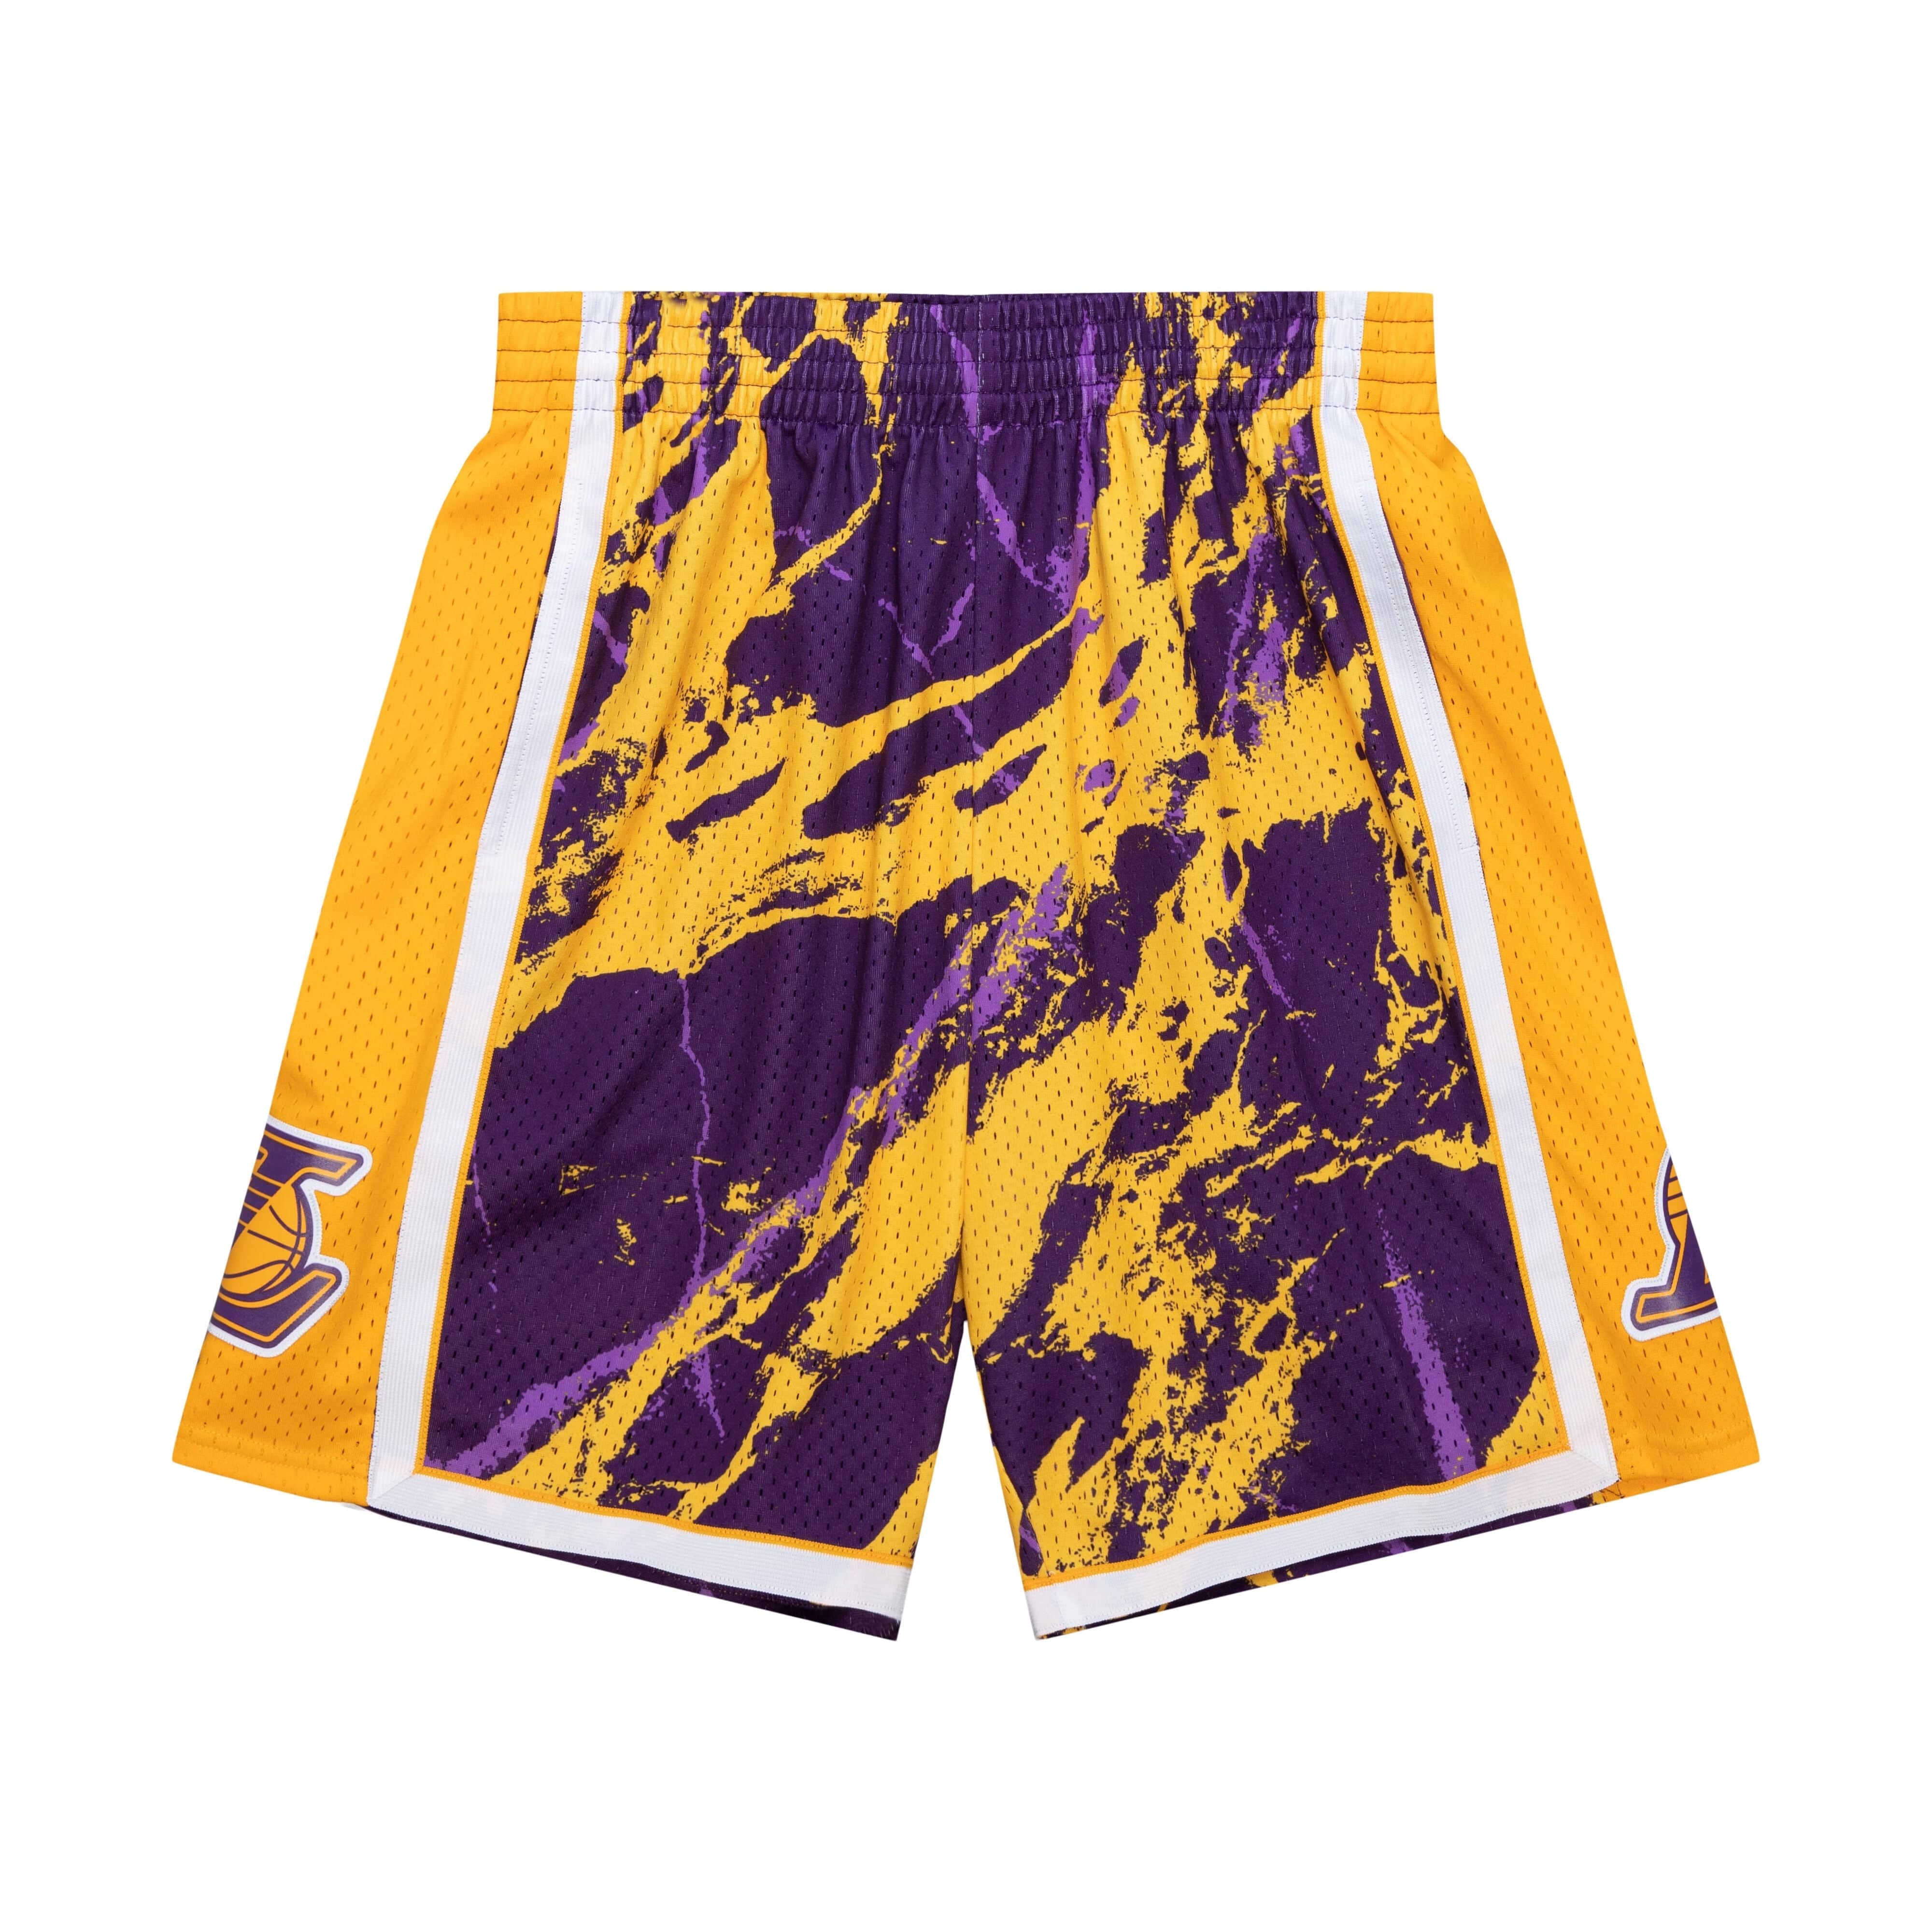 Mitchell & Ness Swingman Lakers Basketball Shorts